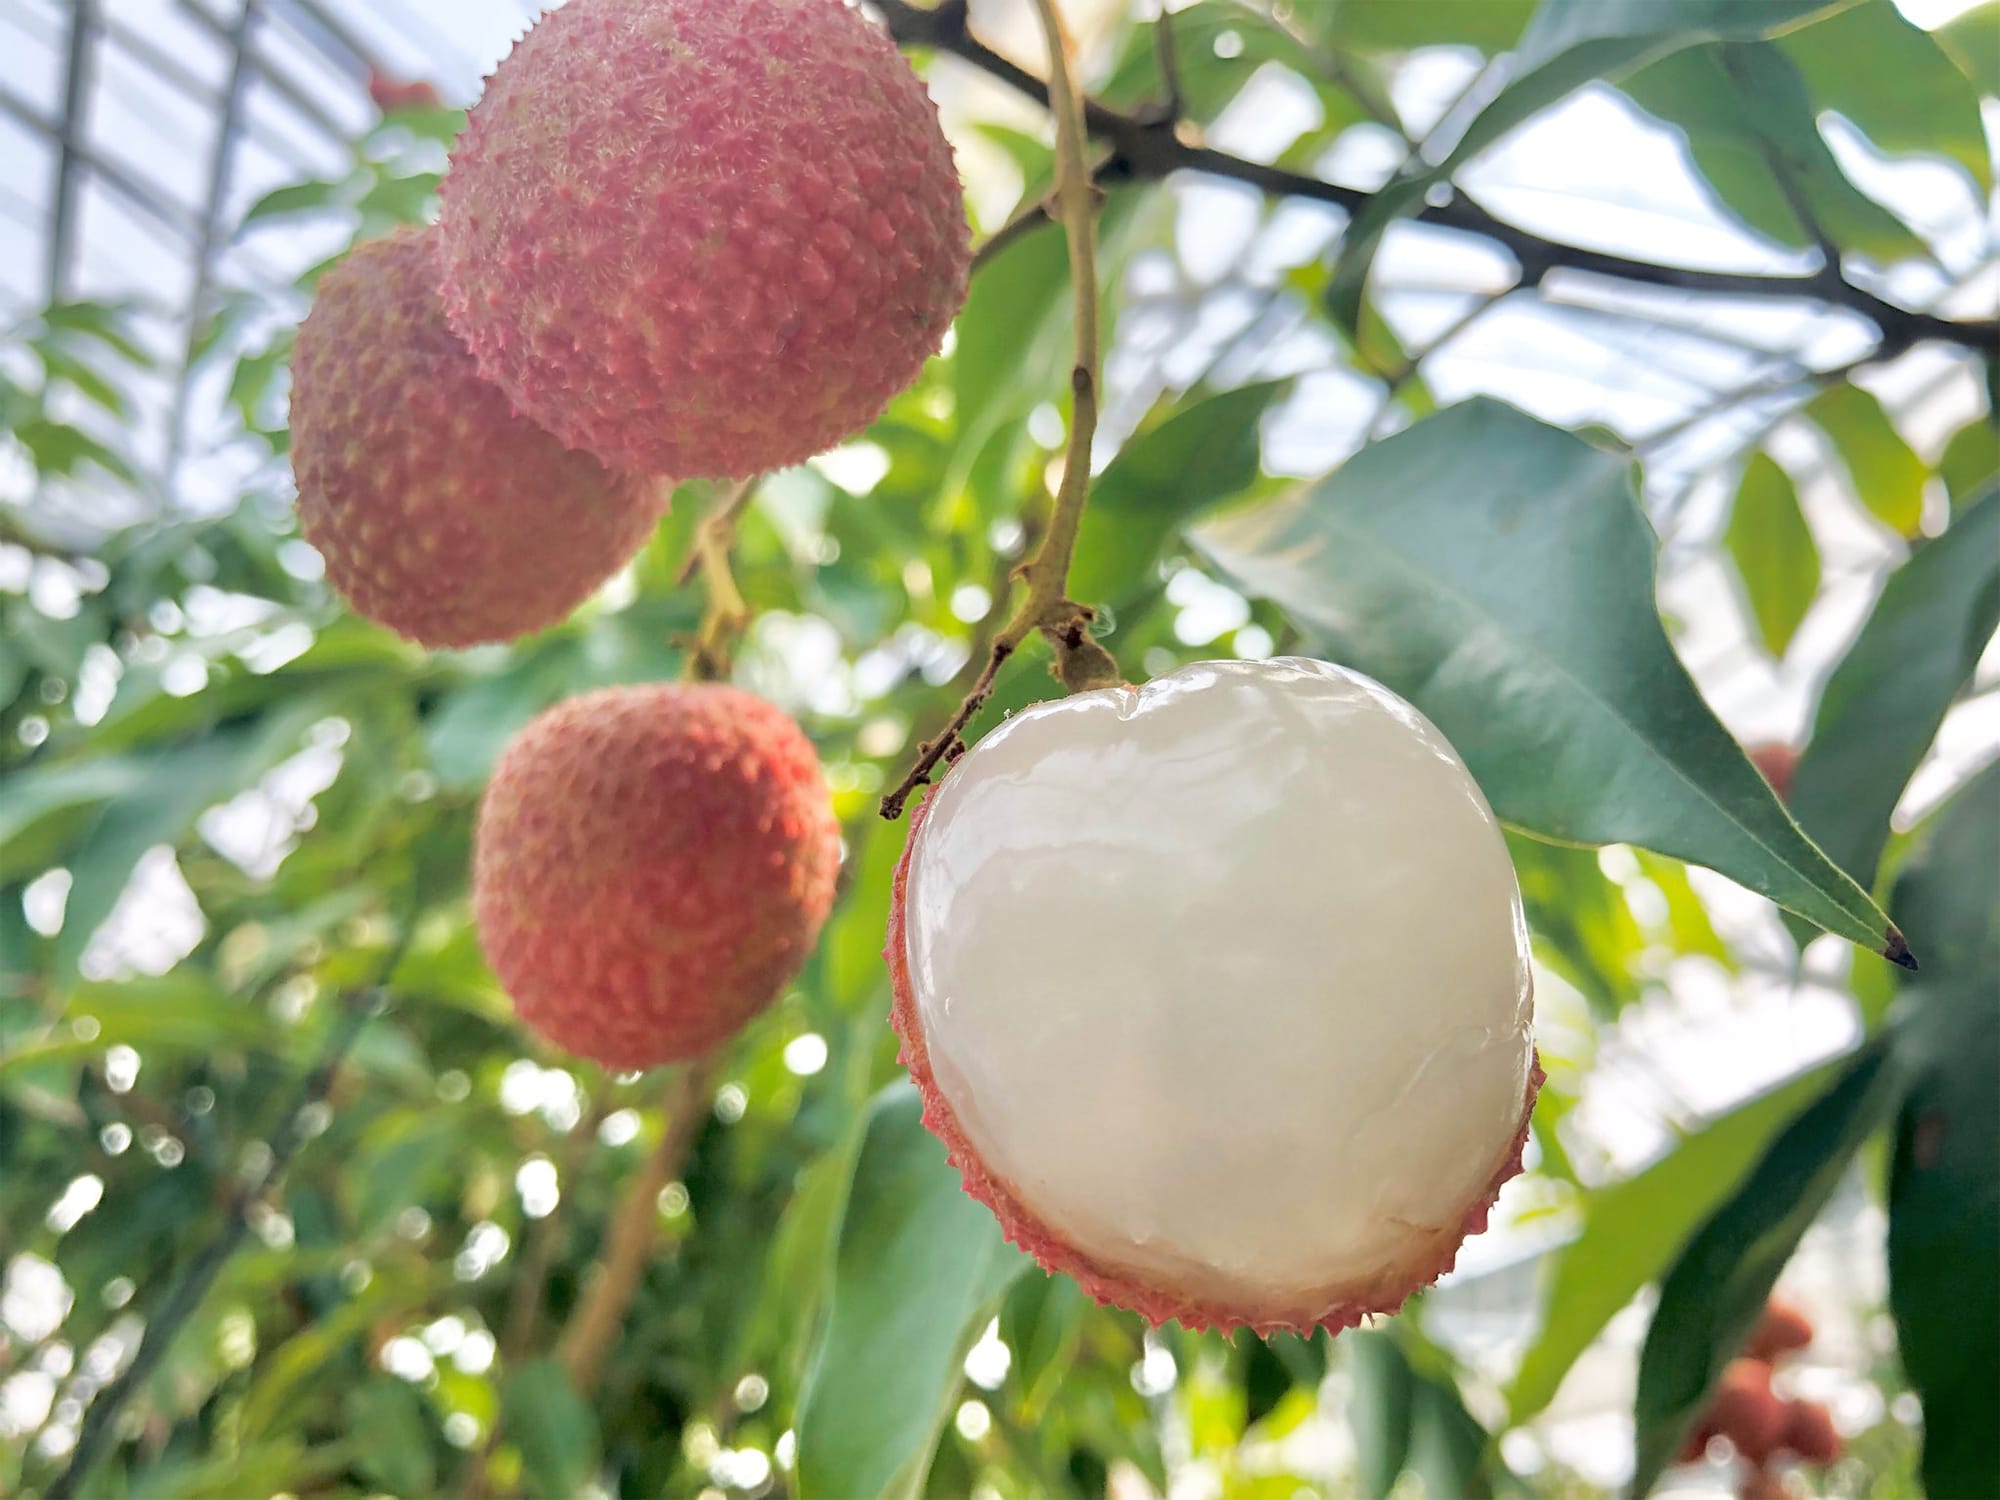 宮崎県都城市で1年かけて栽培されるライチ「太陽の真珠」は、完熟した赤い外皮と透明感のある白い果肉が特徴。